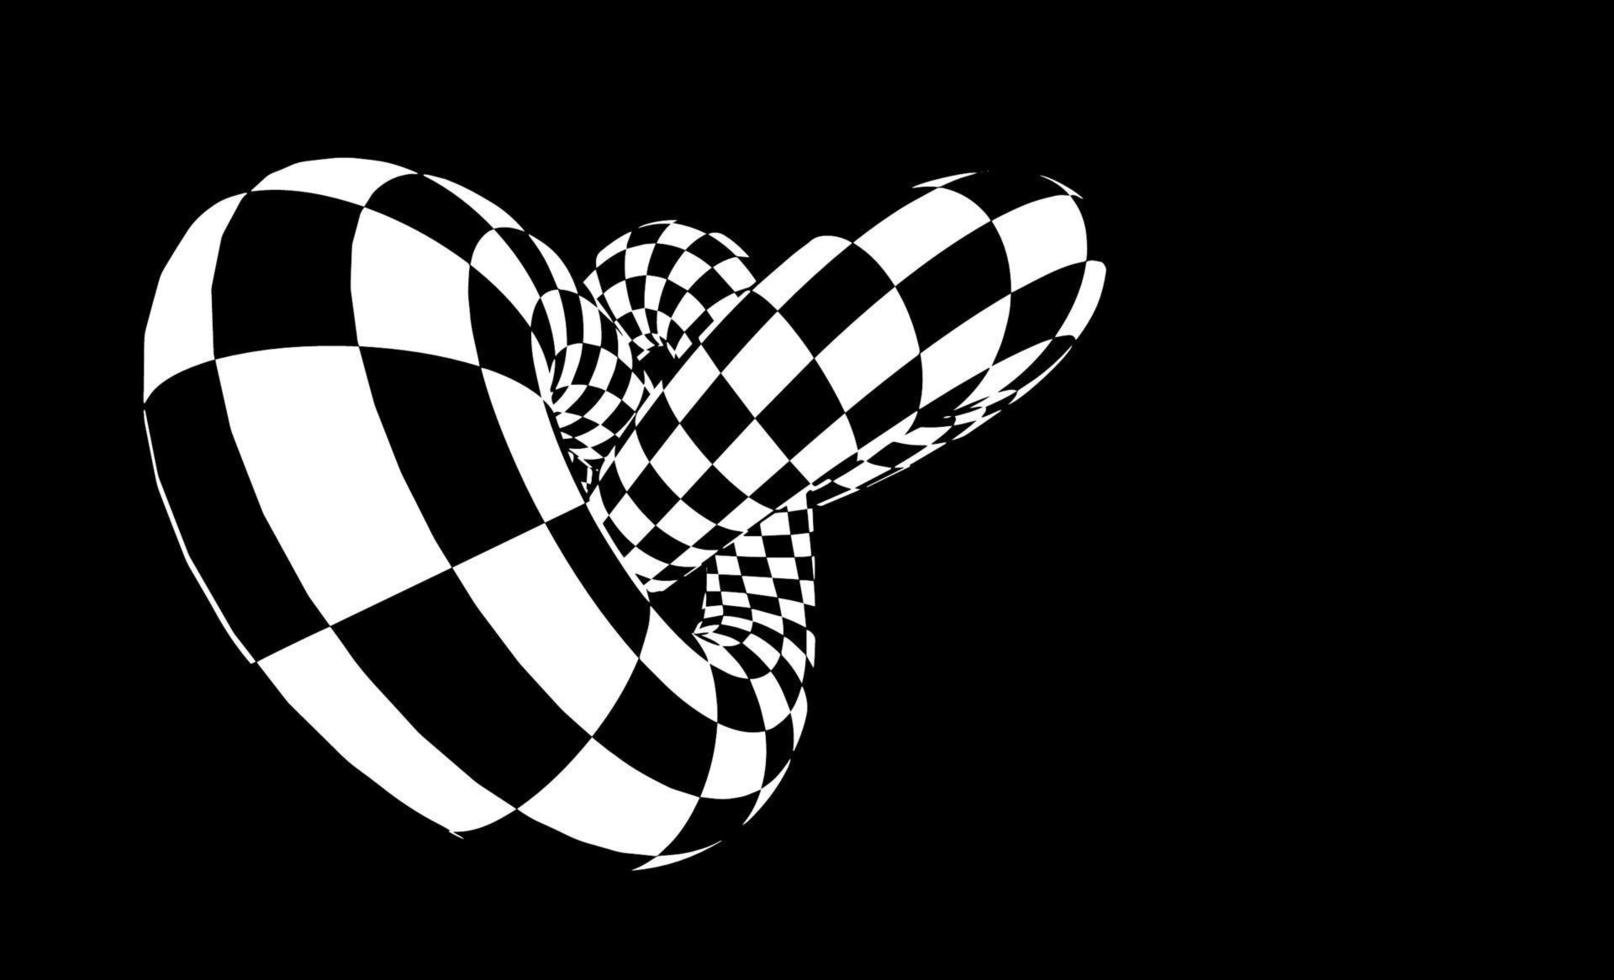 ilustração em vetor toro xadrez eps 10. vetor de ilusão de ótica. fundo do campeonato de corrida.